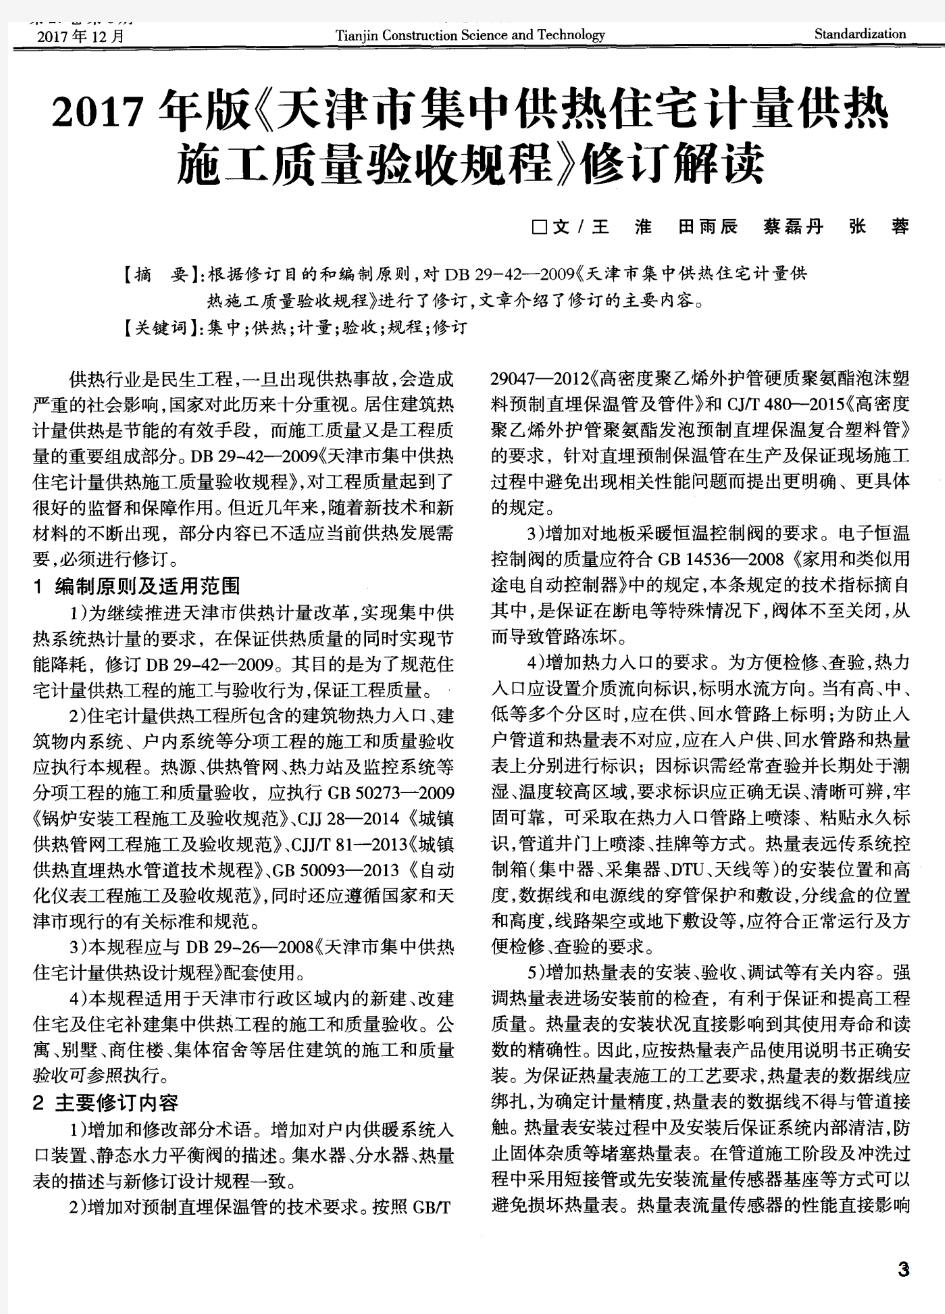 2017年版《天津市集中供热住宅计量供热施工质量验收规程》修订解读